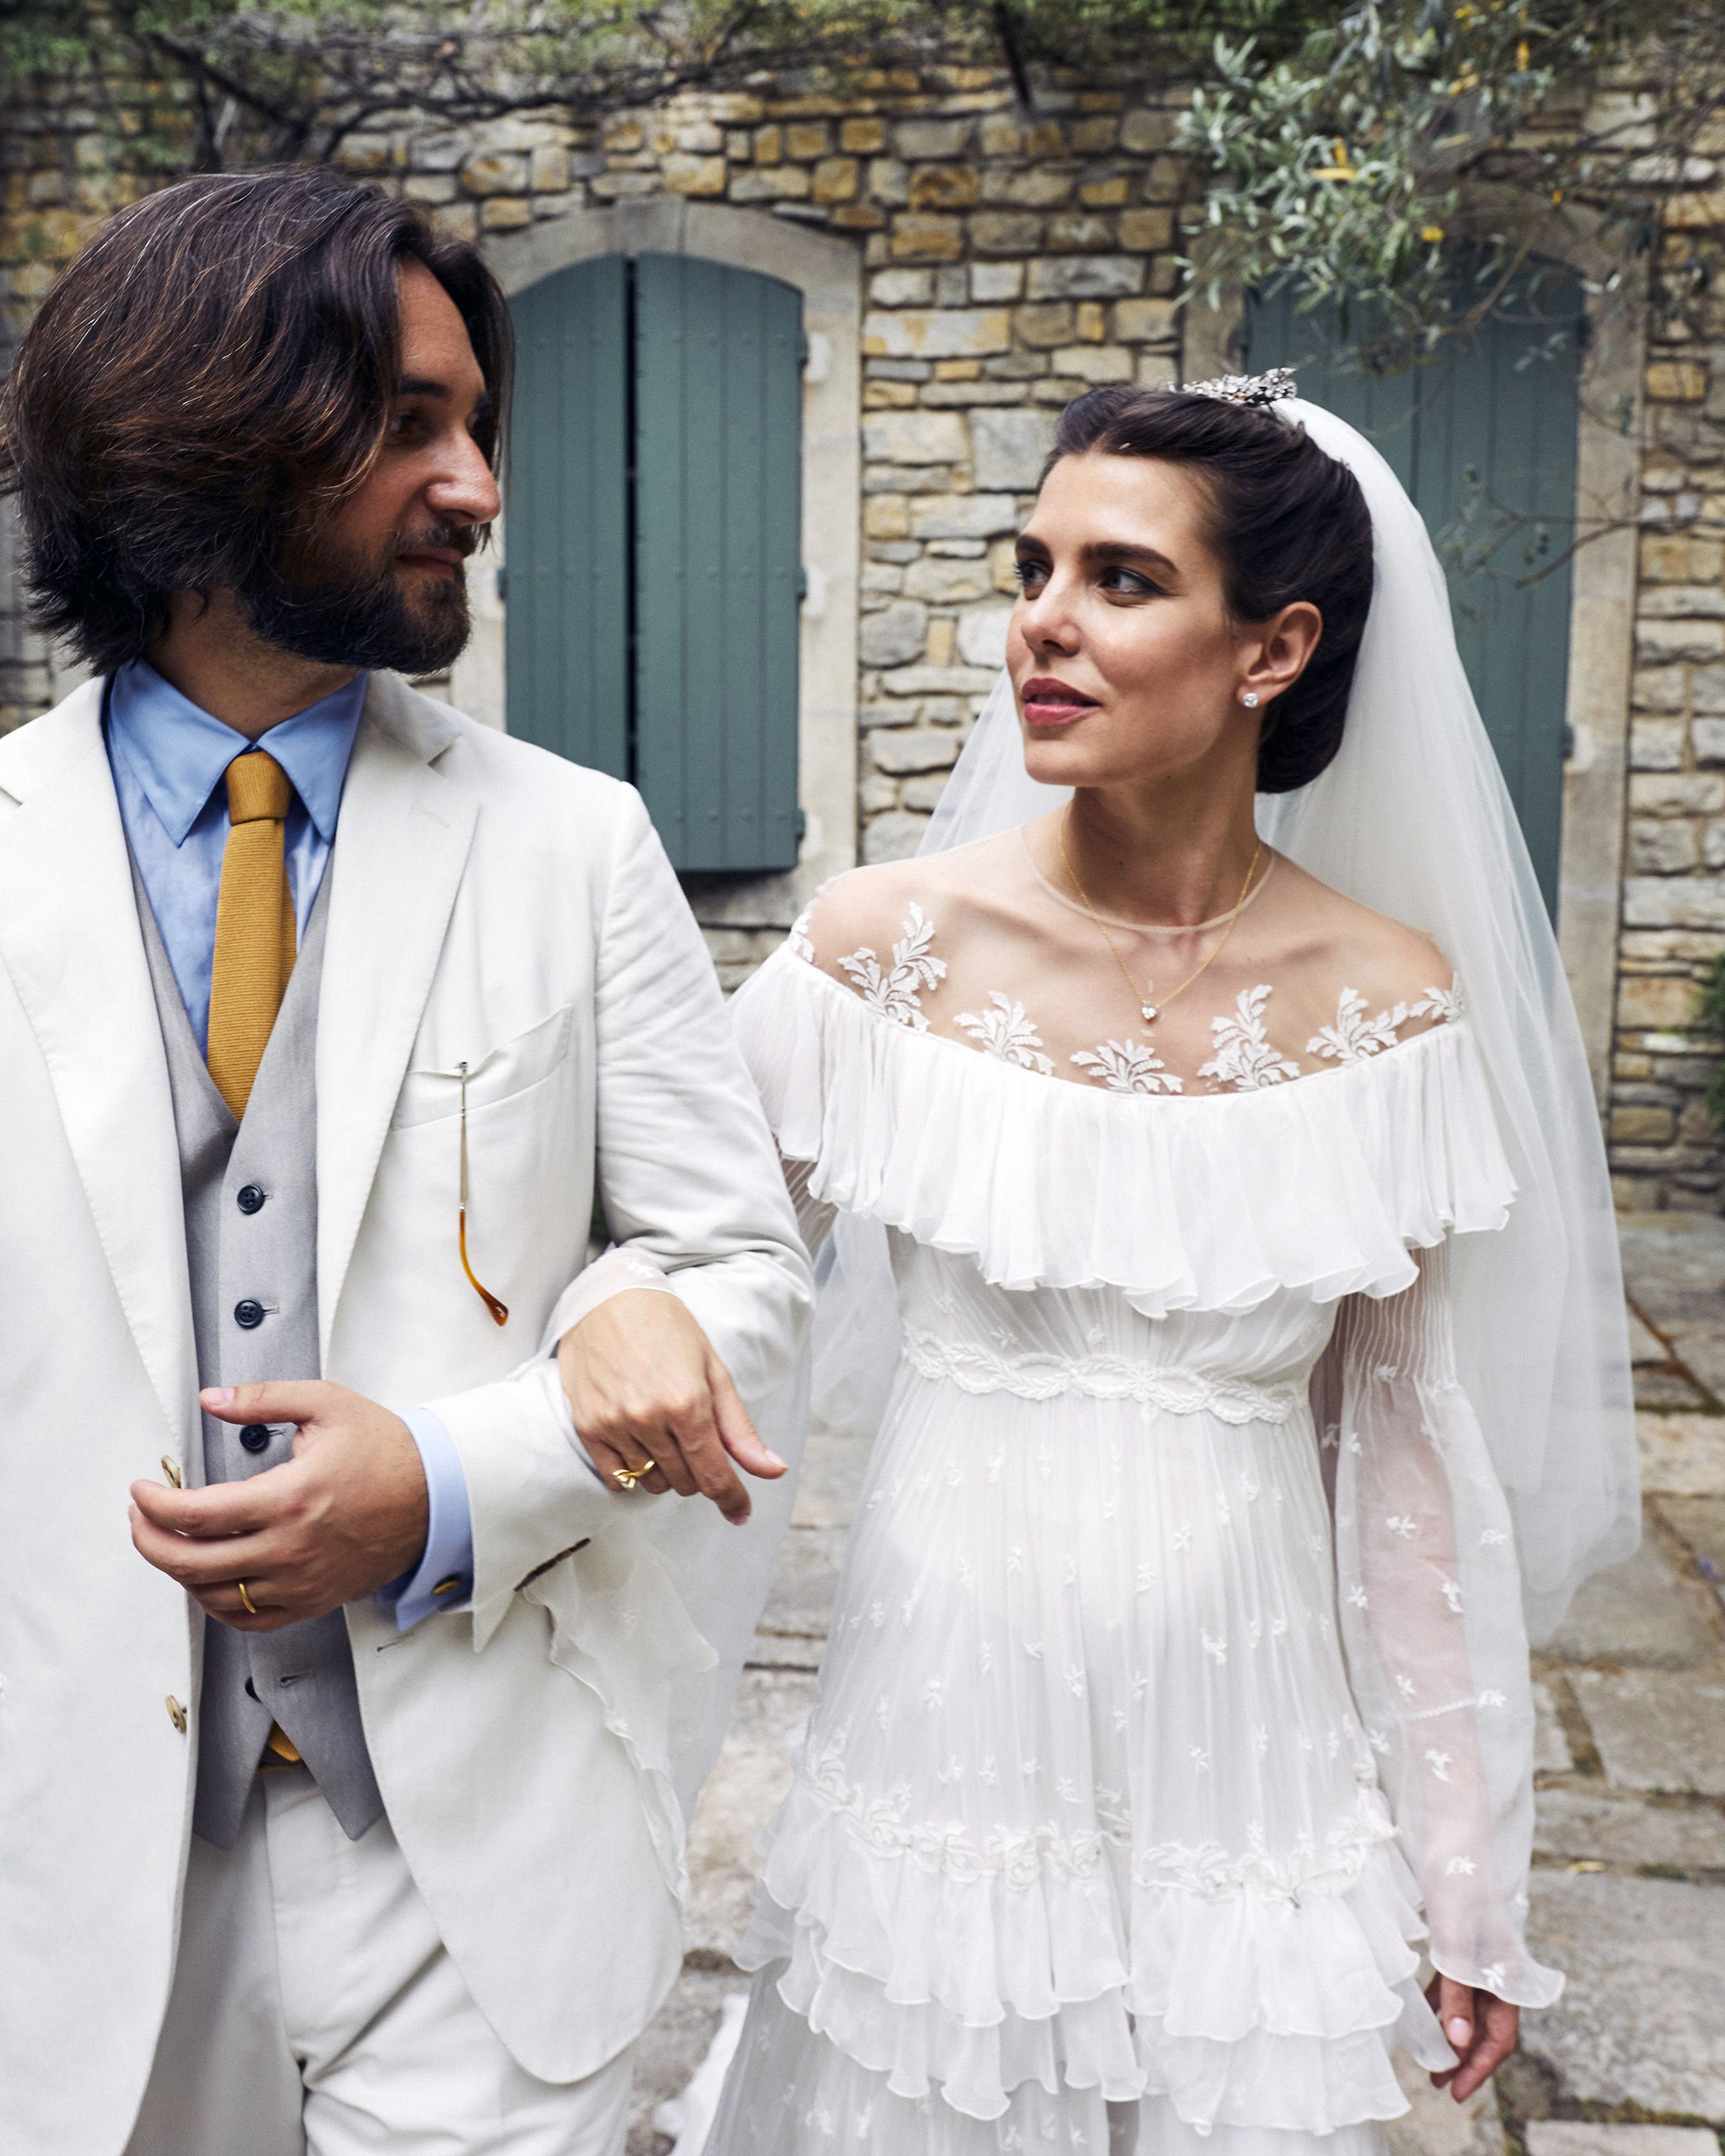 Casamento de Charlotte Casiraghi e Dimitri Rassam